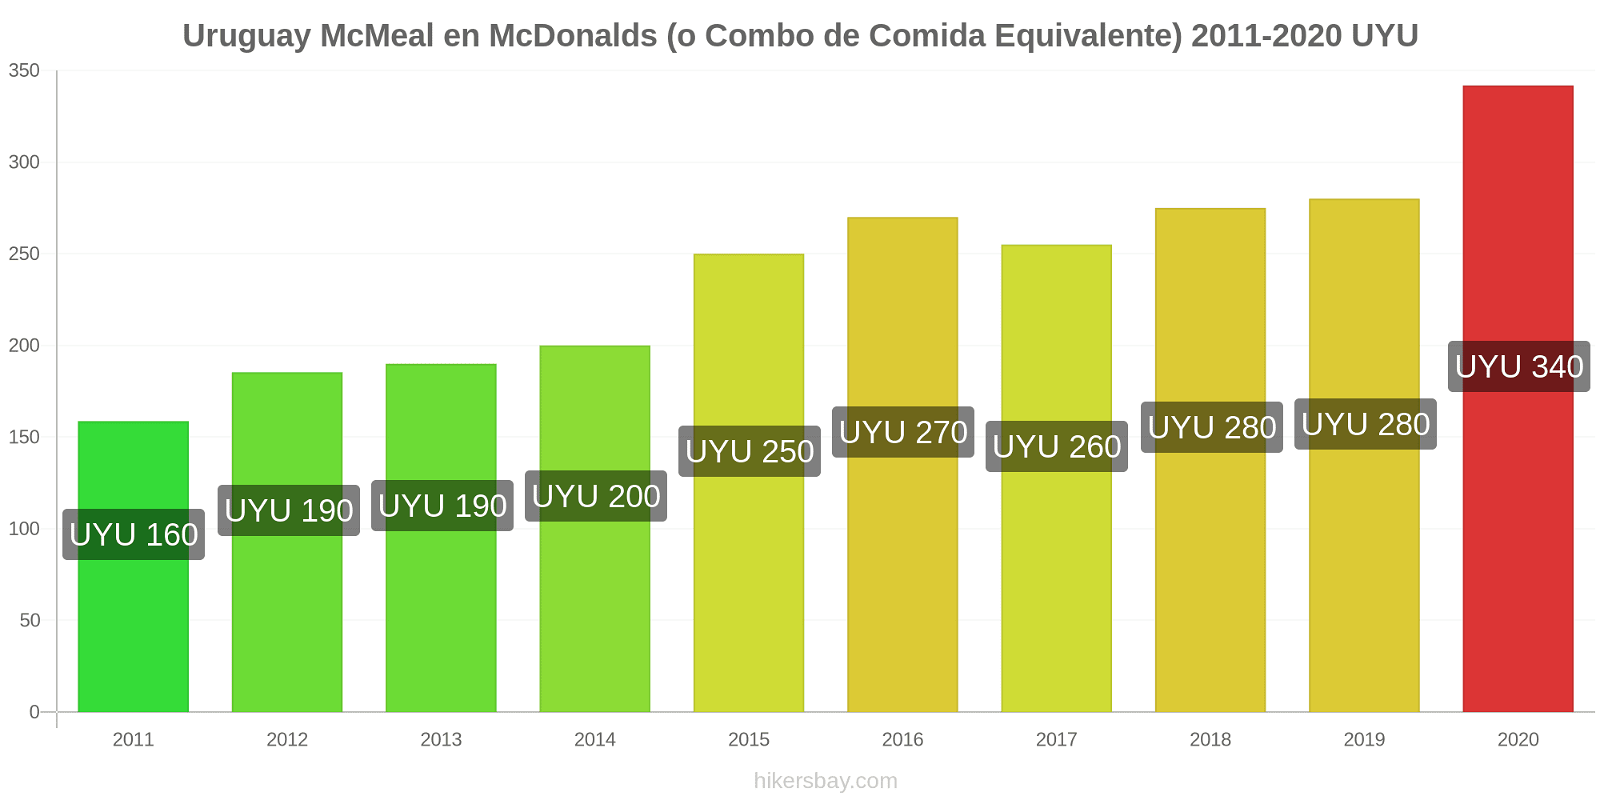 Uruguay cambios de precios McMeal en McDonalds (o menú equivalente) hikersbay.com